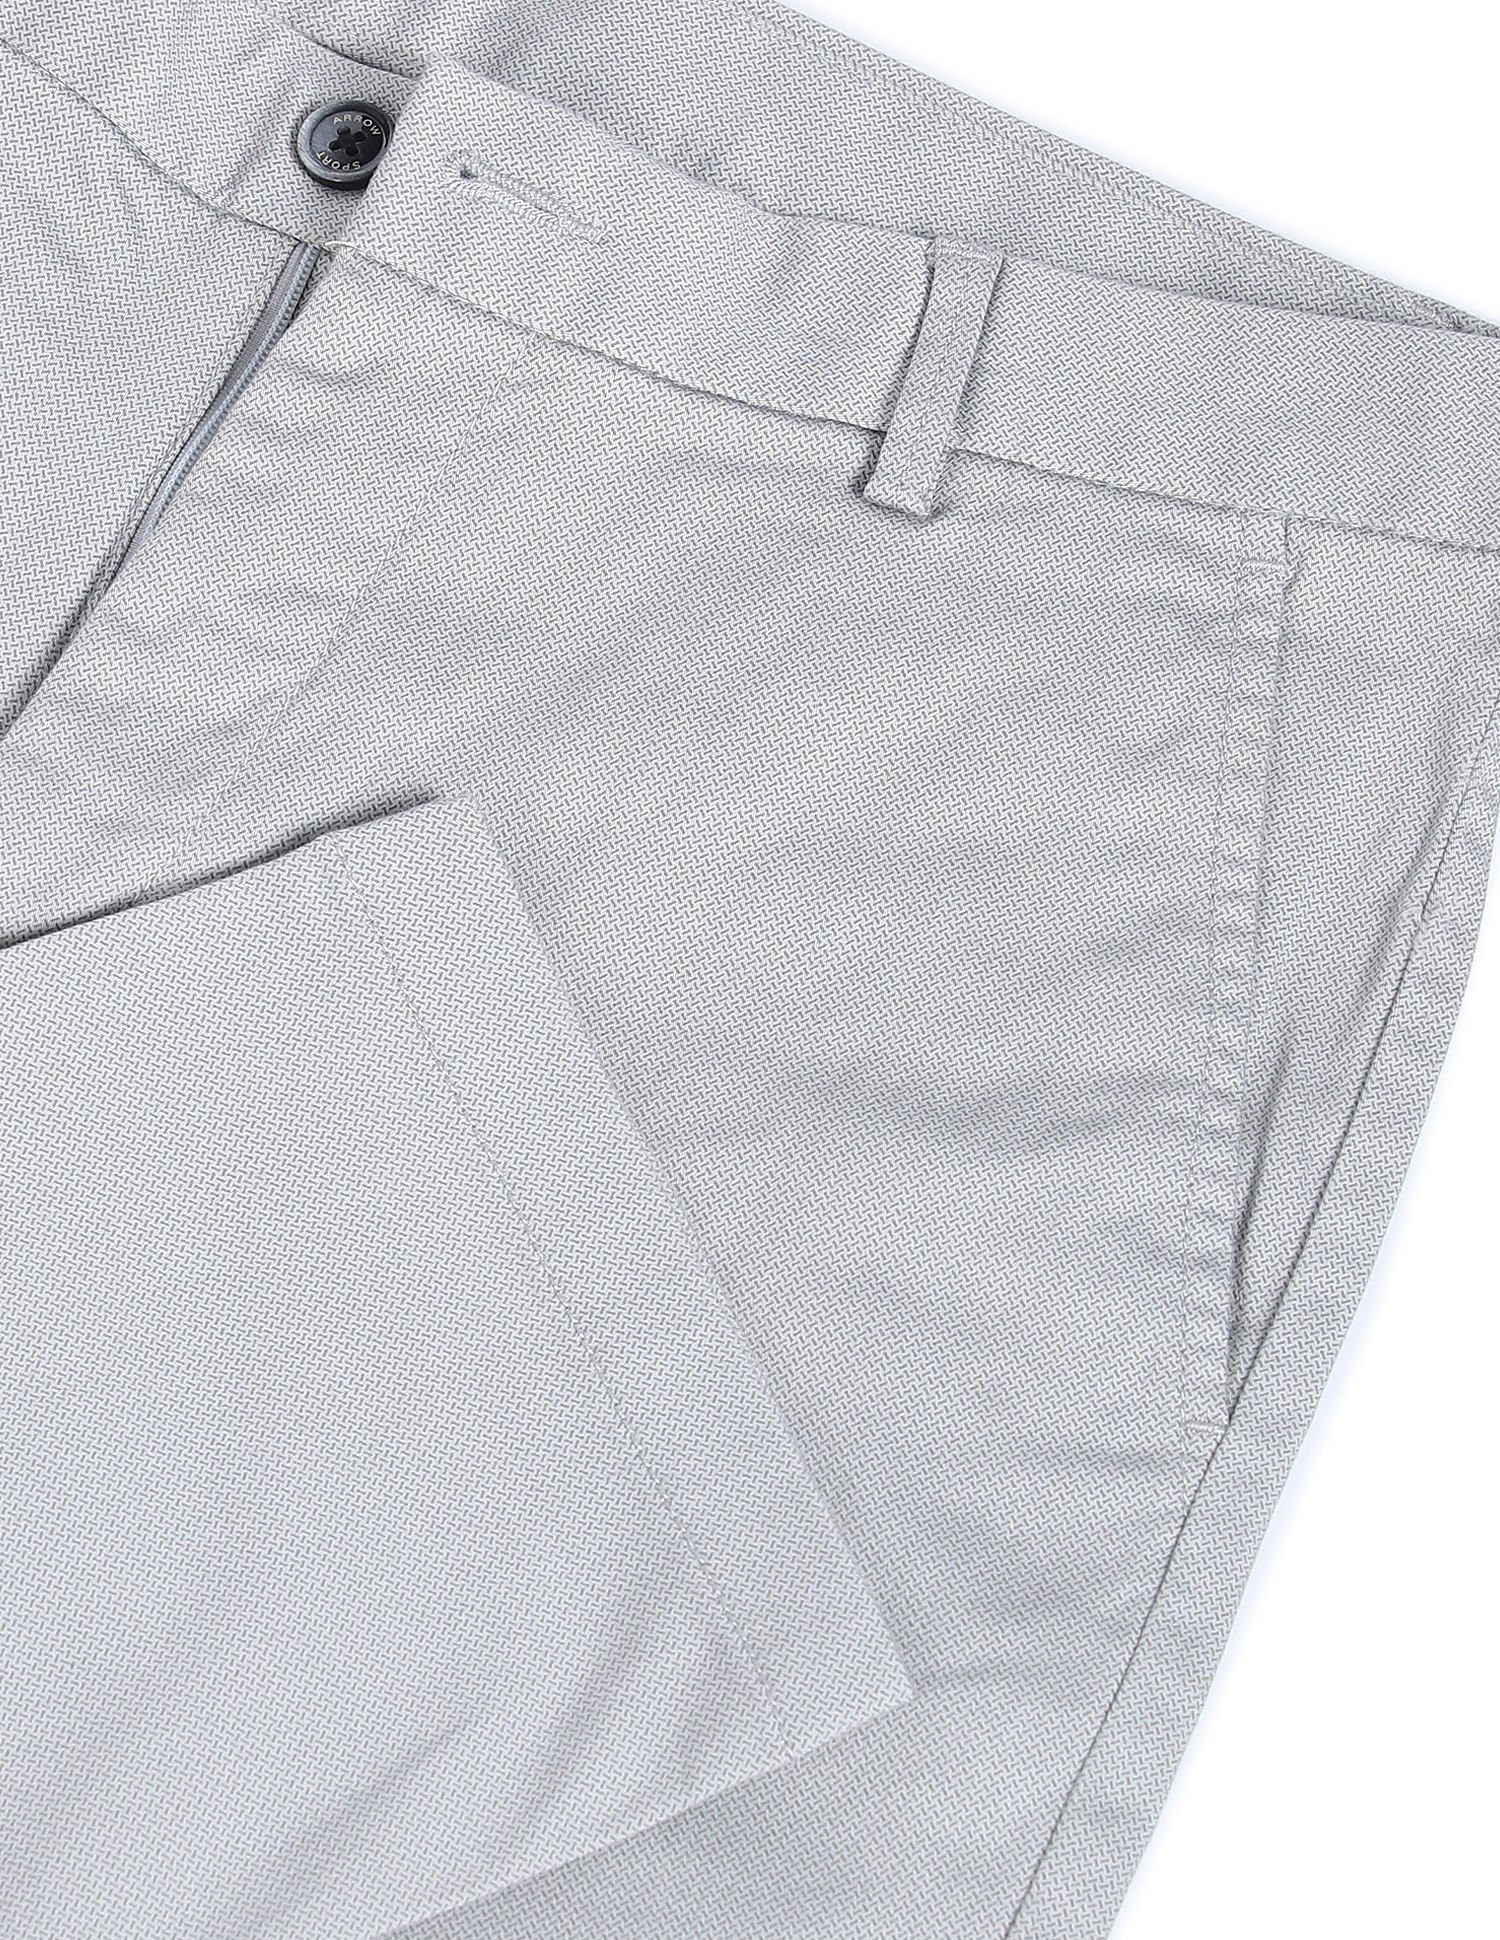 Get Spots Detail Skinny Fit Grey Denim Washed Jeans at  949  LBB Shop